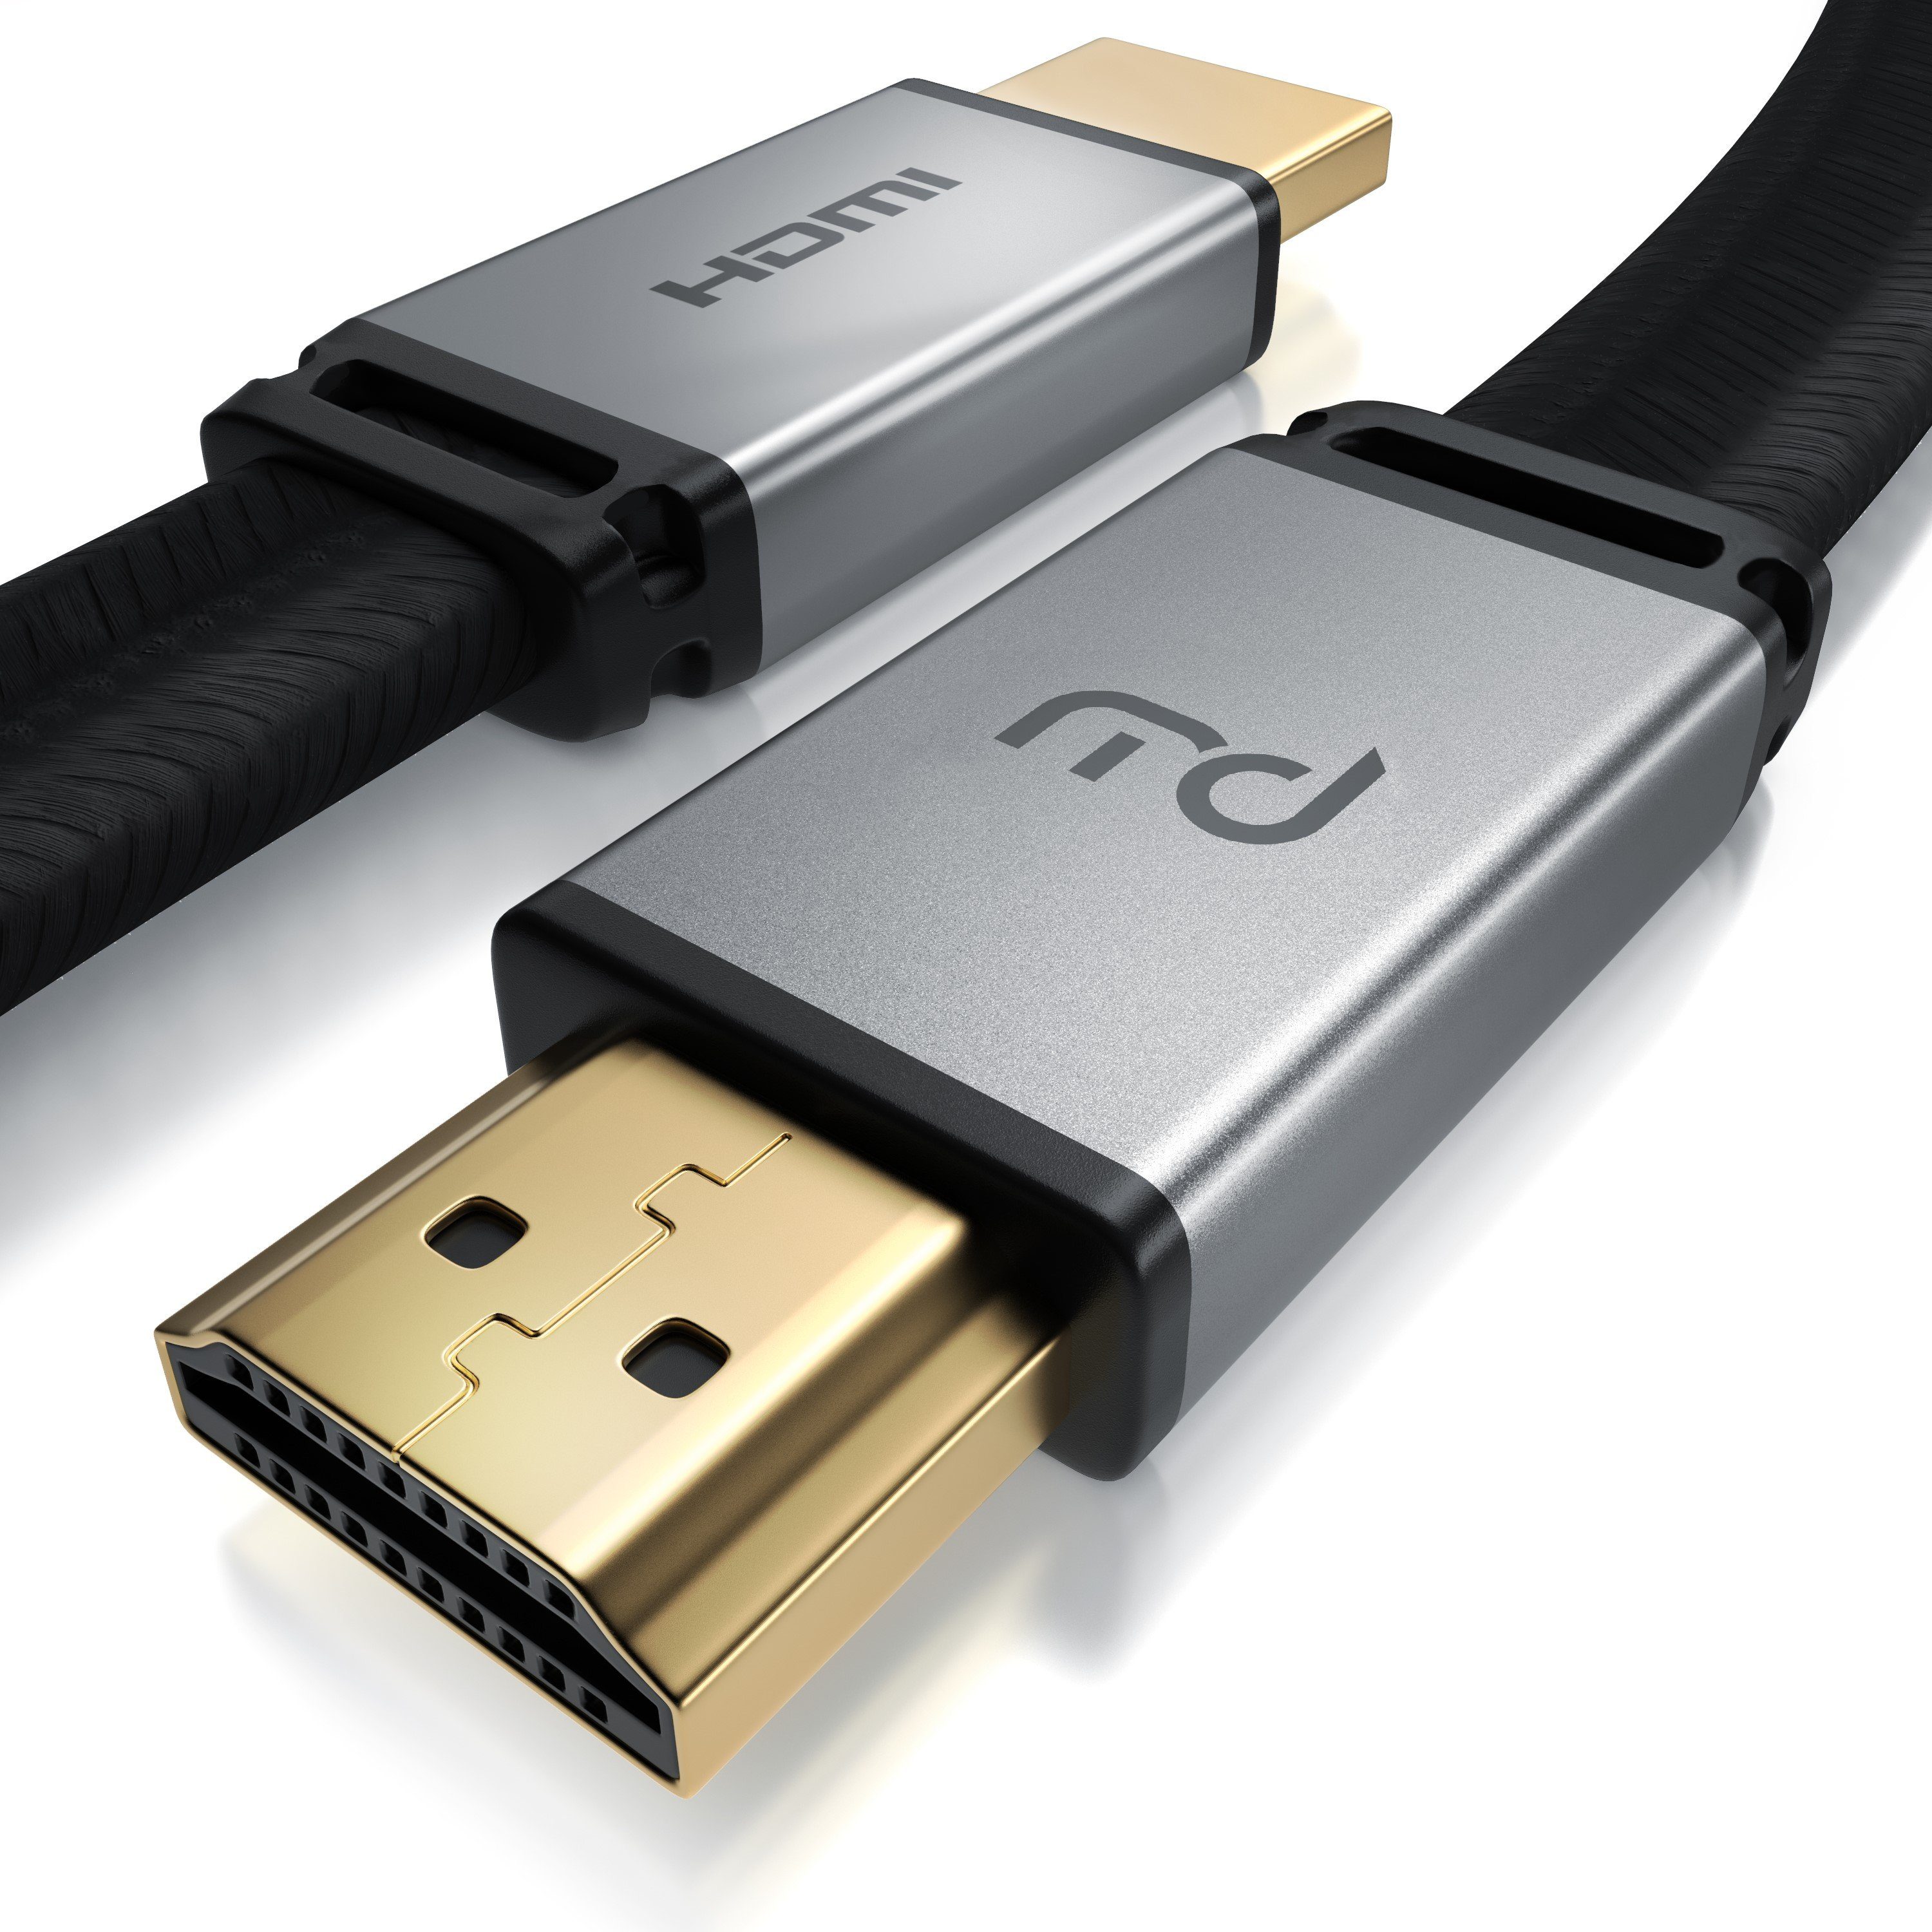 Primewire HDMI-Kabel, 2.1, HDMI flach 7680 - 4320 Typ 120 mit 8K 1m @ DSC x Hz Flachbandkabel A (100 Gewebemantel cm)